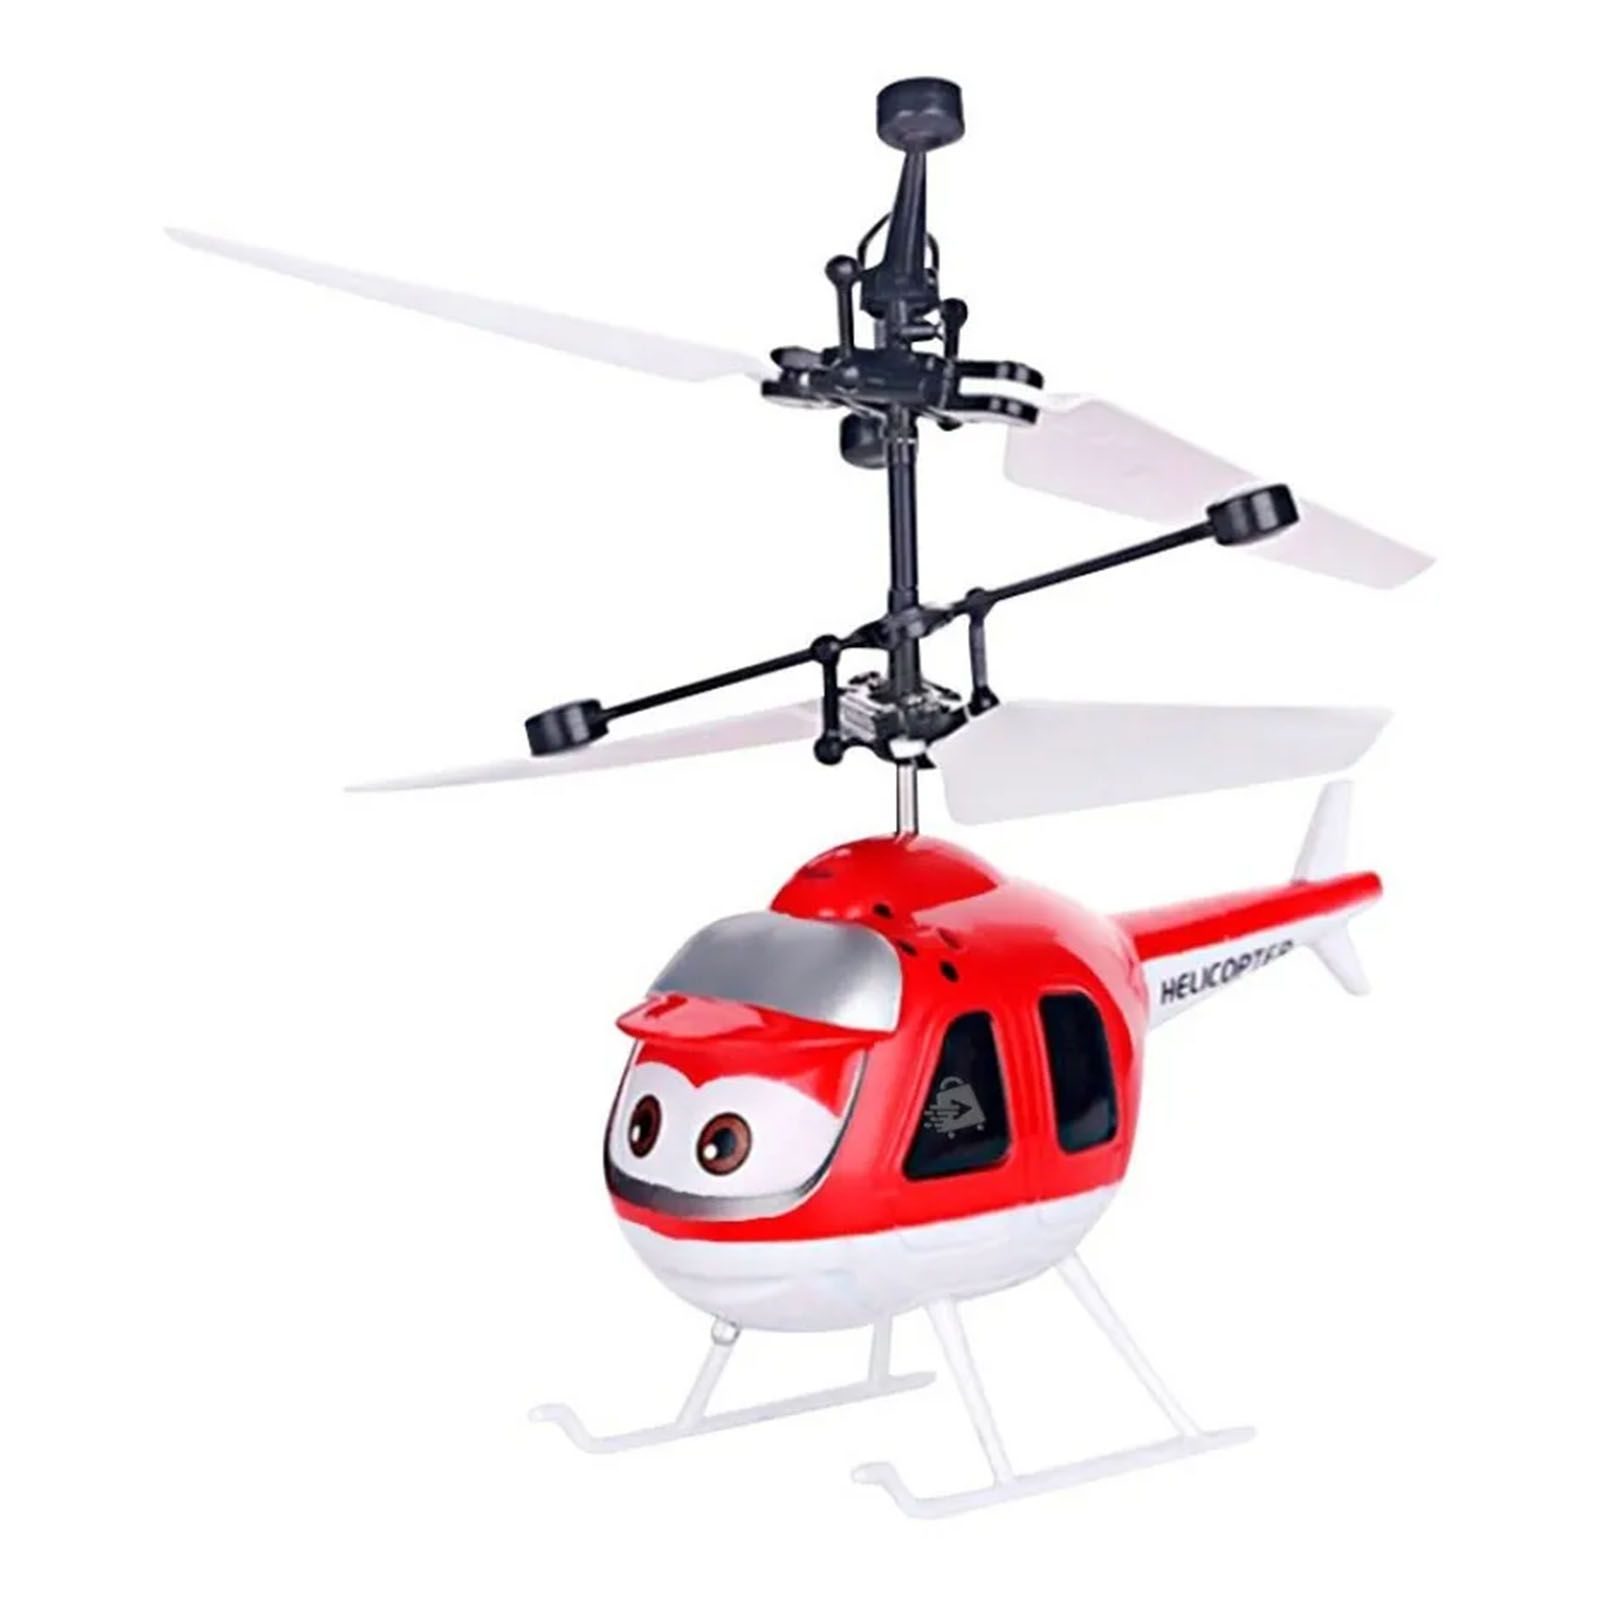 Портативные самолеты. Мини вертолет игрушка. Вертолет игрушечный на датчике. Игрушка вертолёт электрический. Микро игрушки самолеты и вертолеты.